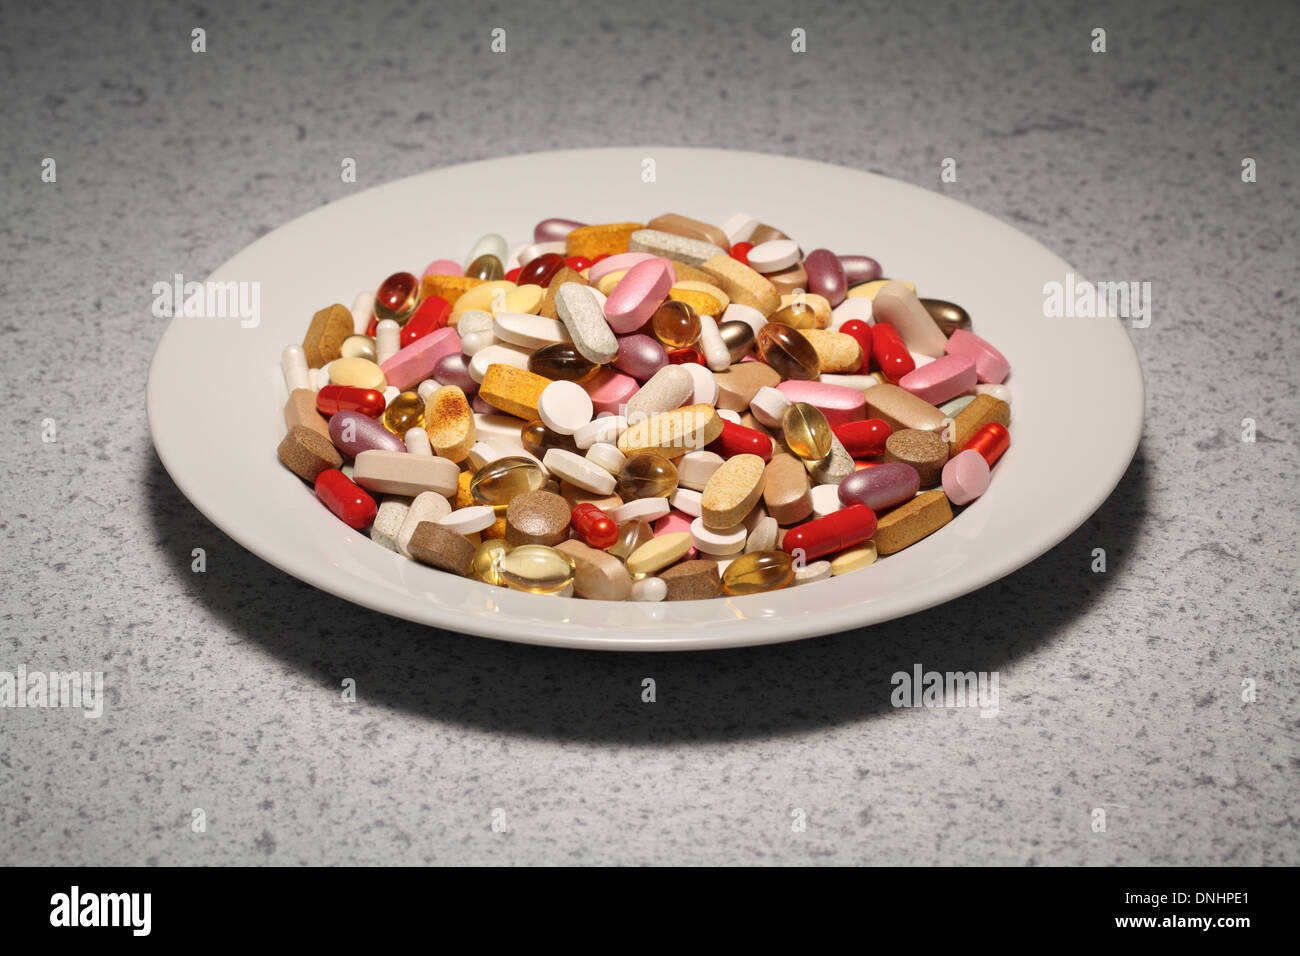 Una placa redonda rellenas con una mezcla de suplementos vitamínicos- píldoras, tabletas y cápsulas. Foto de stock